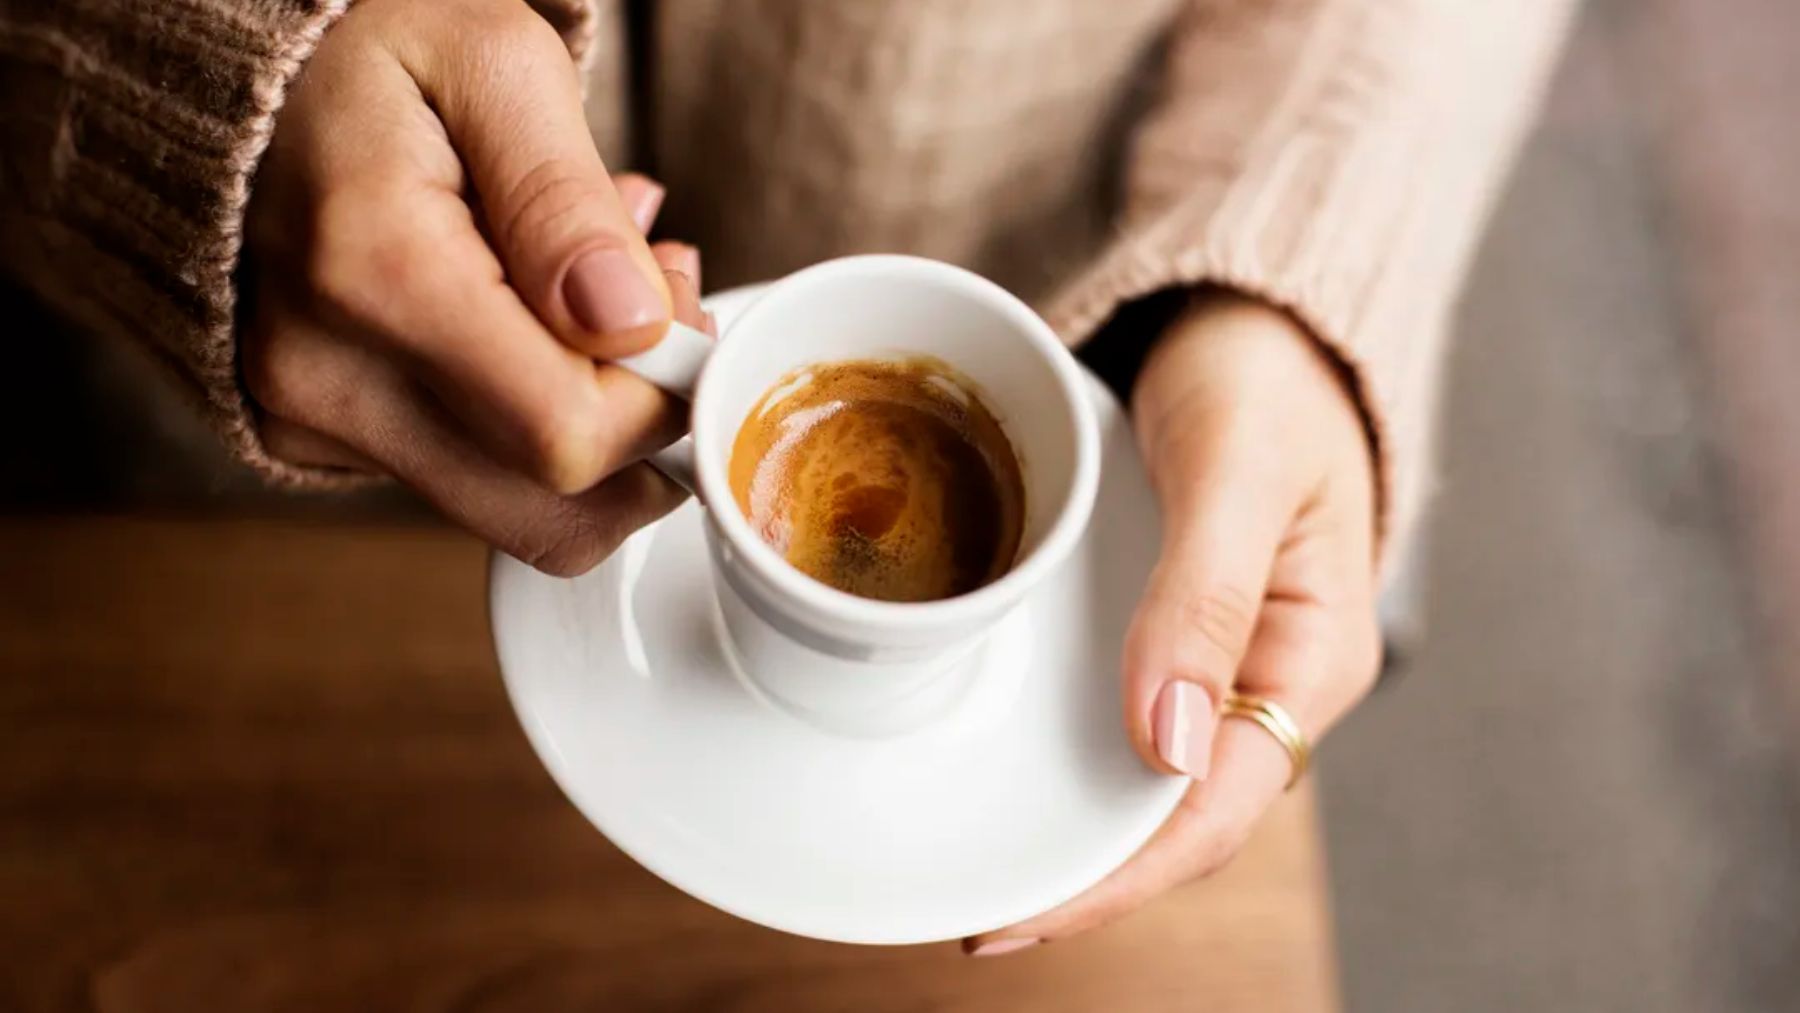 Espresso Crema café descafeinado molido natural al estilo italiano